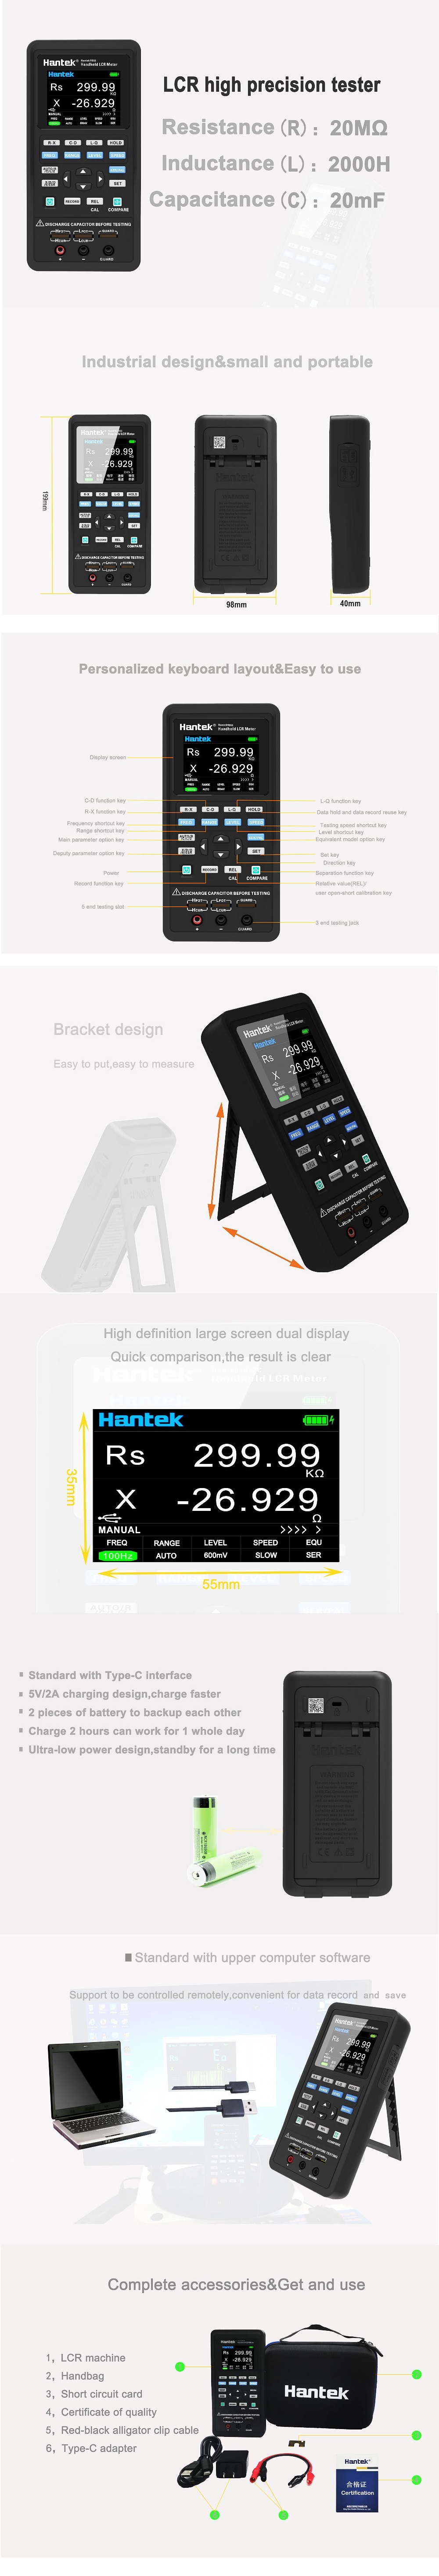 Hantek-Digital-LCR-Meter-Portable-Handeld-Inductance-Capacitance-Resistance-Measurement-Tester-Tools-1957907-3